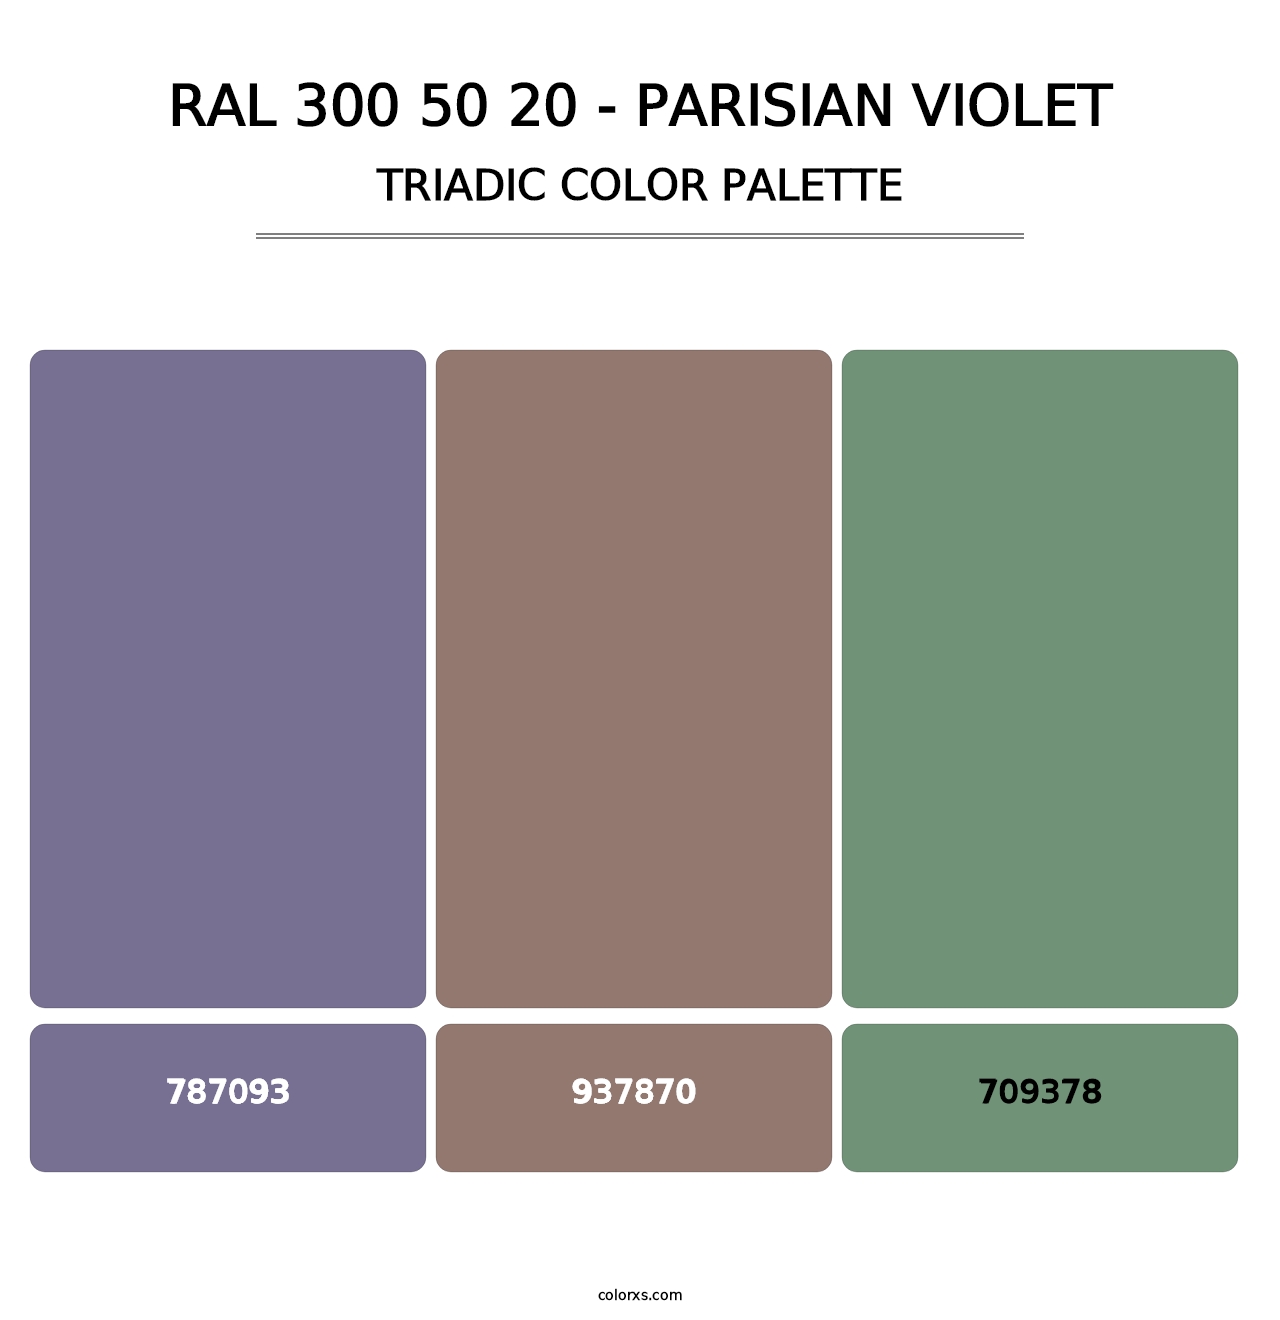 RAL 300 50 20 - Parisian Violet - Triadic Color Palette